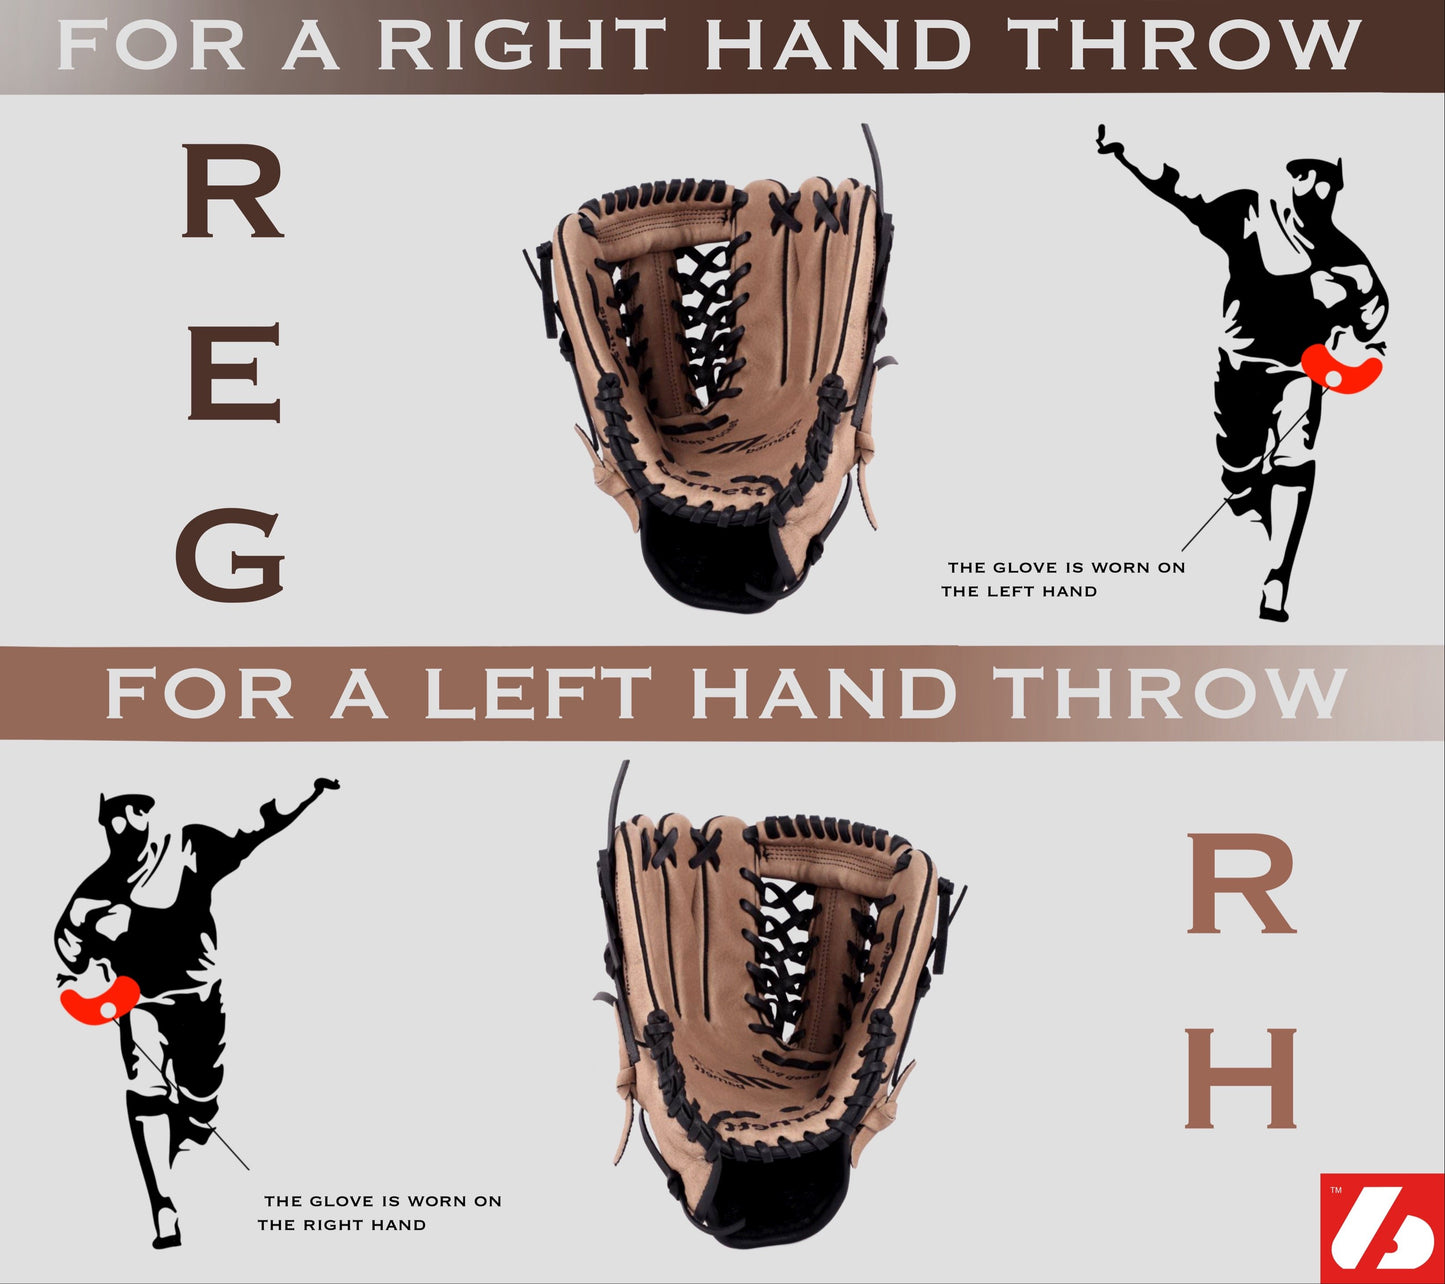 FL-127 vysoce kvalitní kožené baseballové rukavice infield / outfield / pitcher, světle šedá